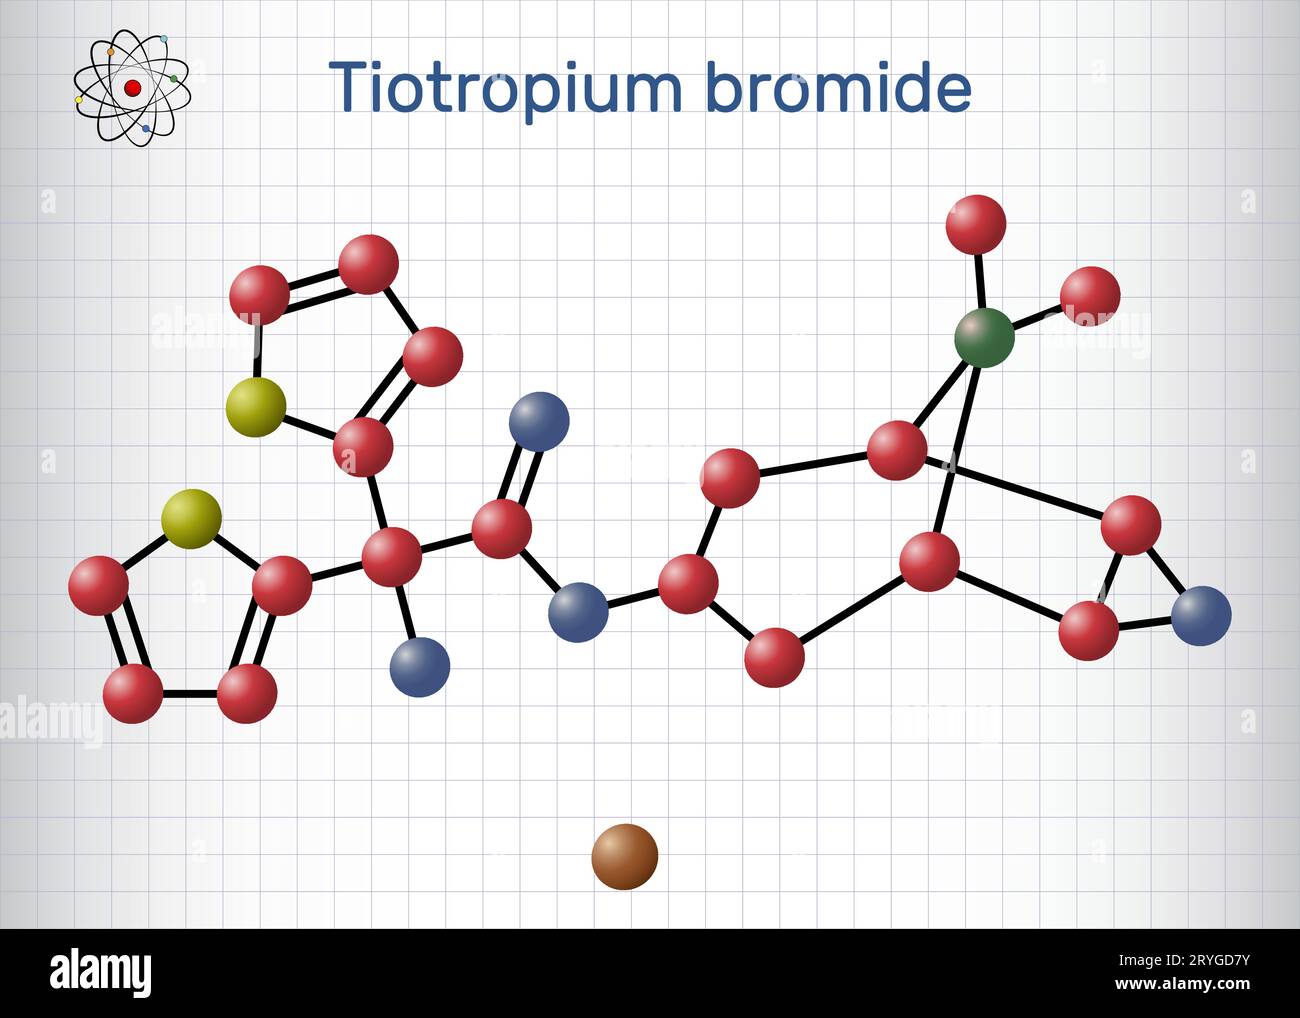 Molécule de bromure de tiotropium. Formule chimique structurale, modèle moléculaire. Feuille de papier dans une cage Illustration de Vecteur